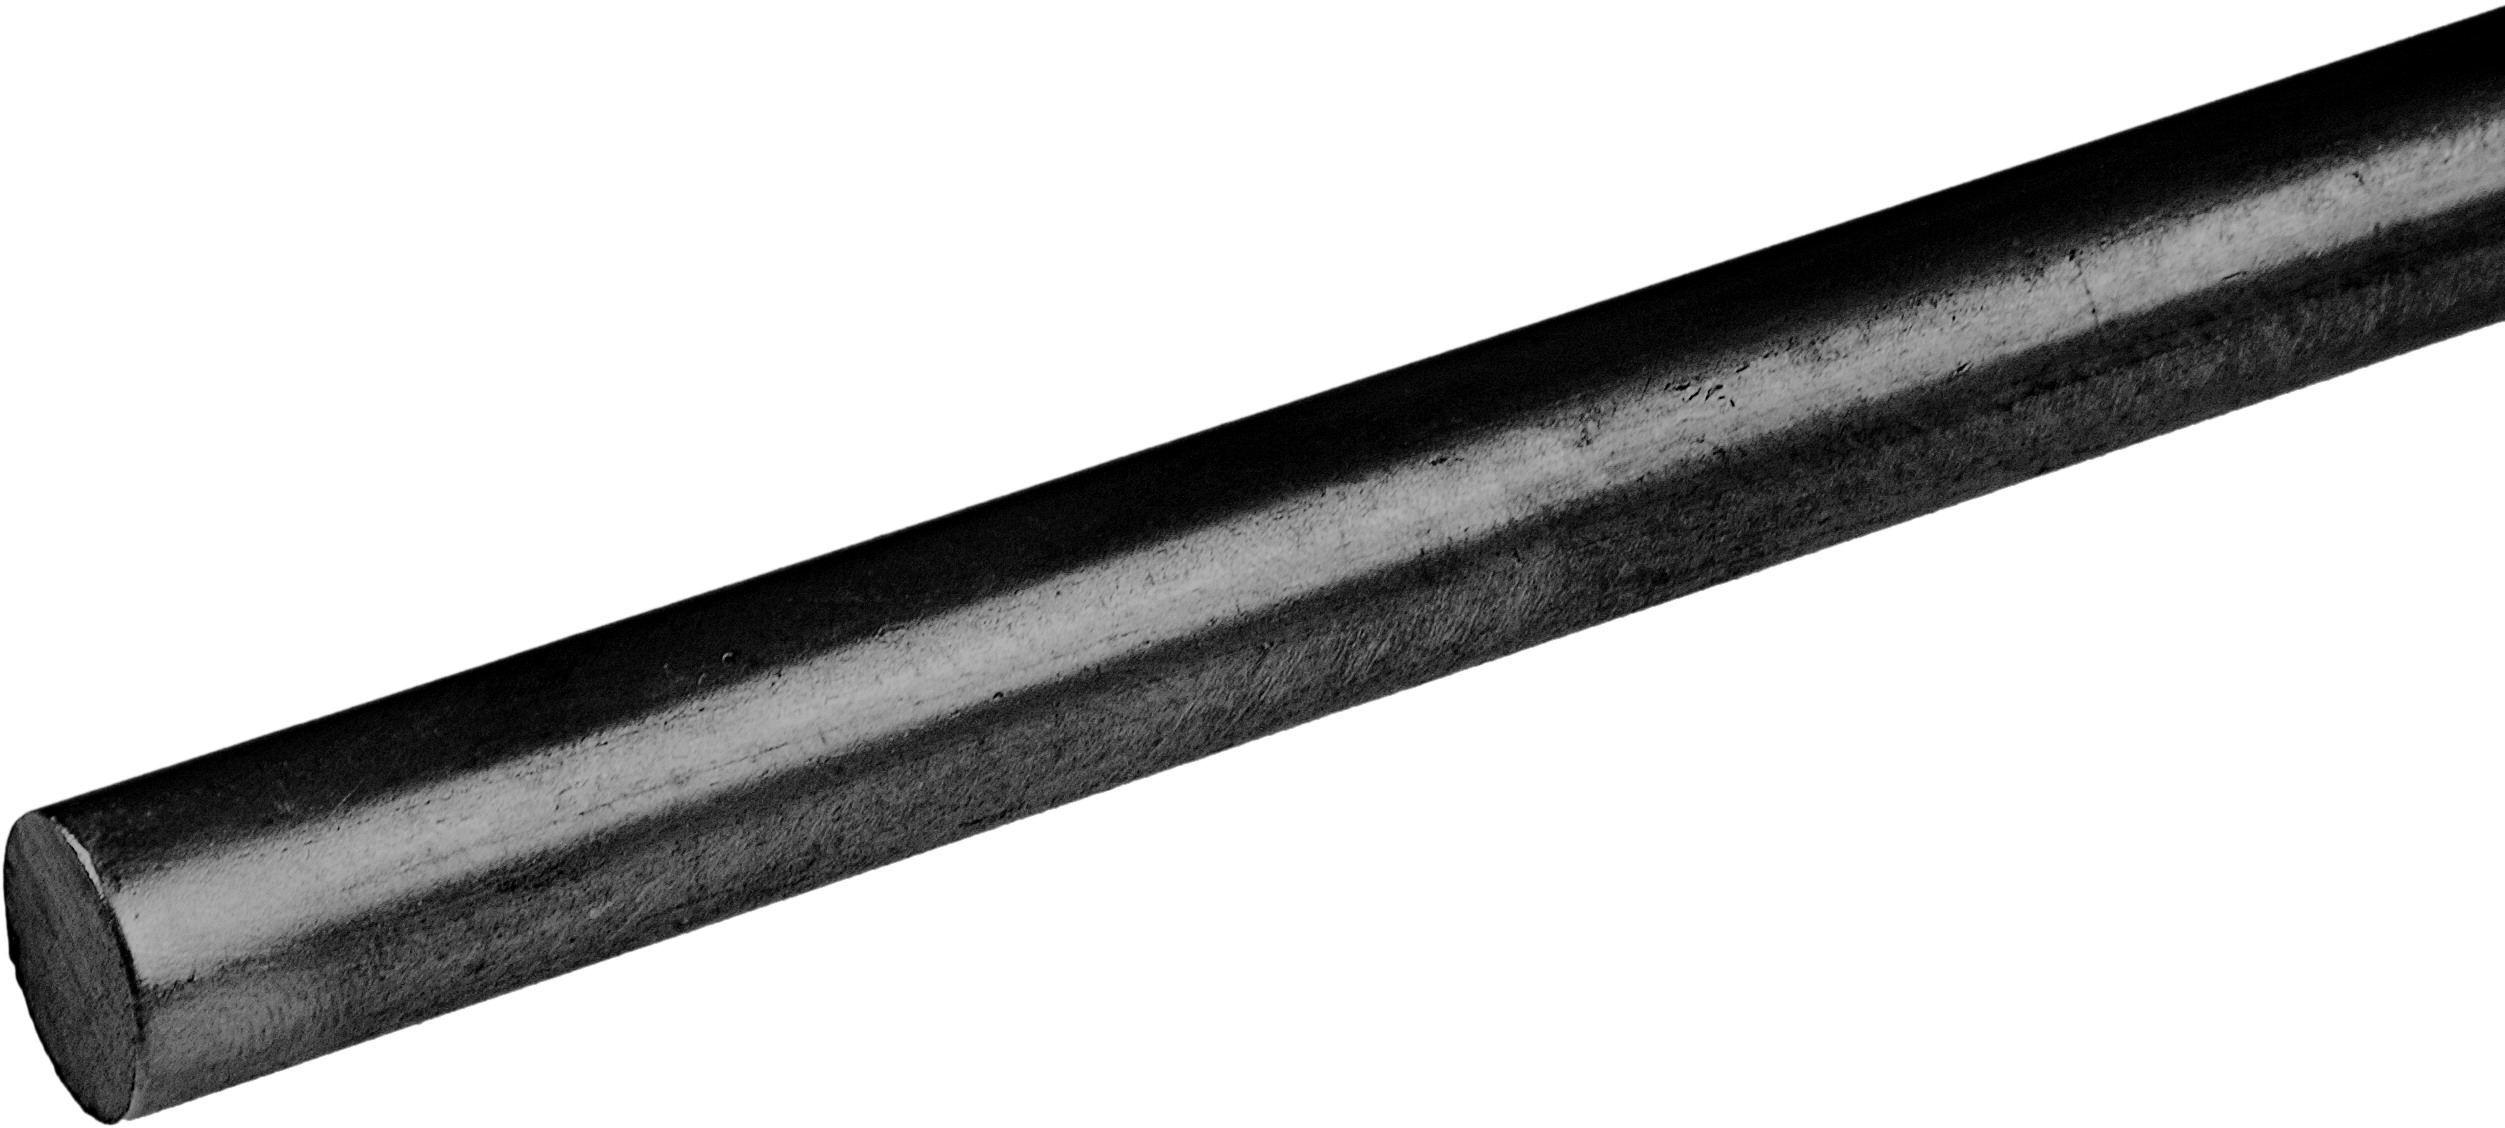 Barre ronde en fer forgé d'une longueur de 3000mm et d'un diamètre de 16mm. A souder.